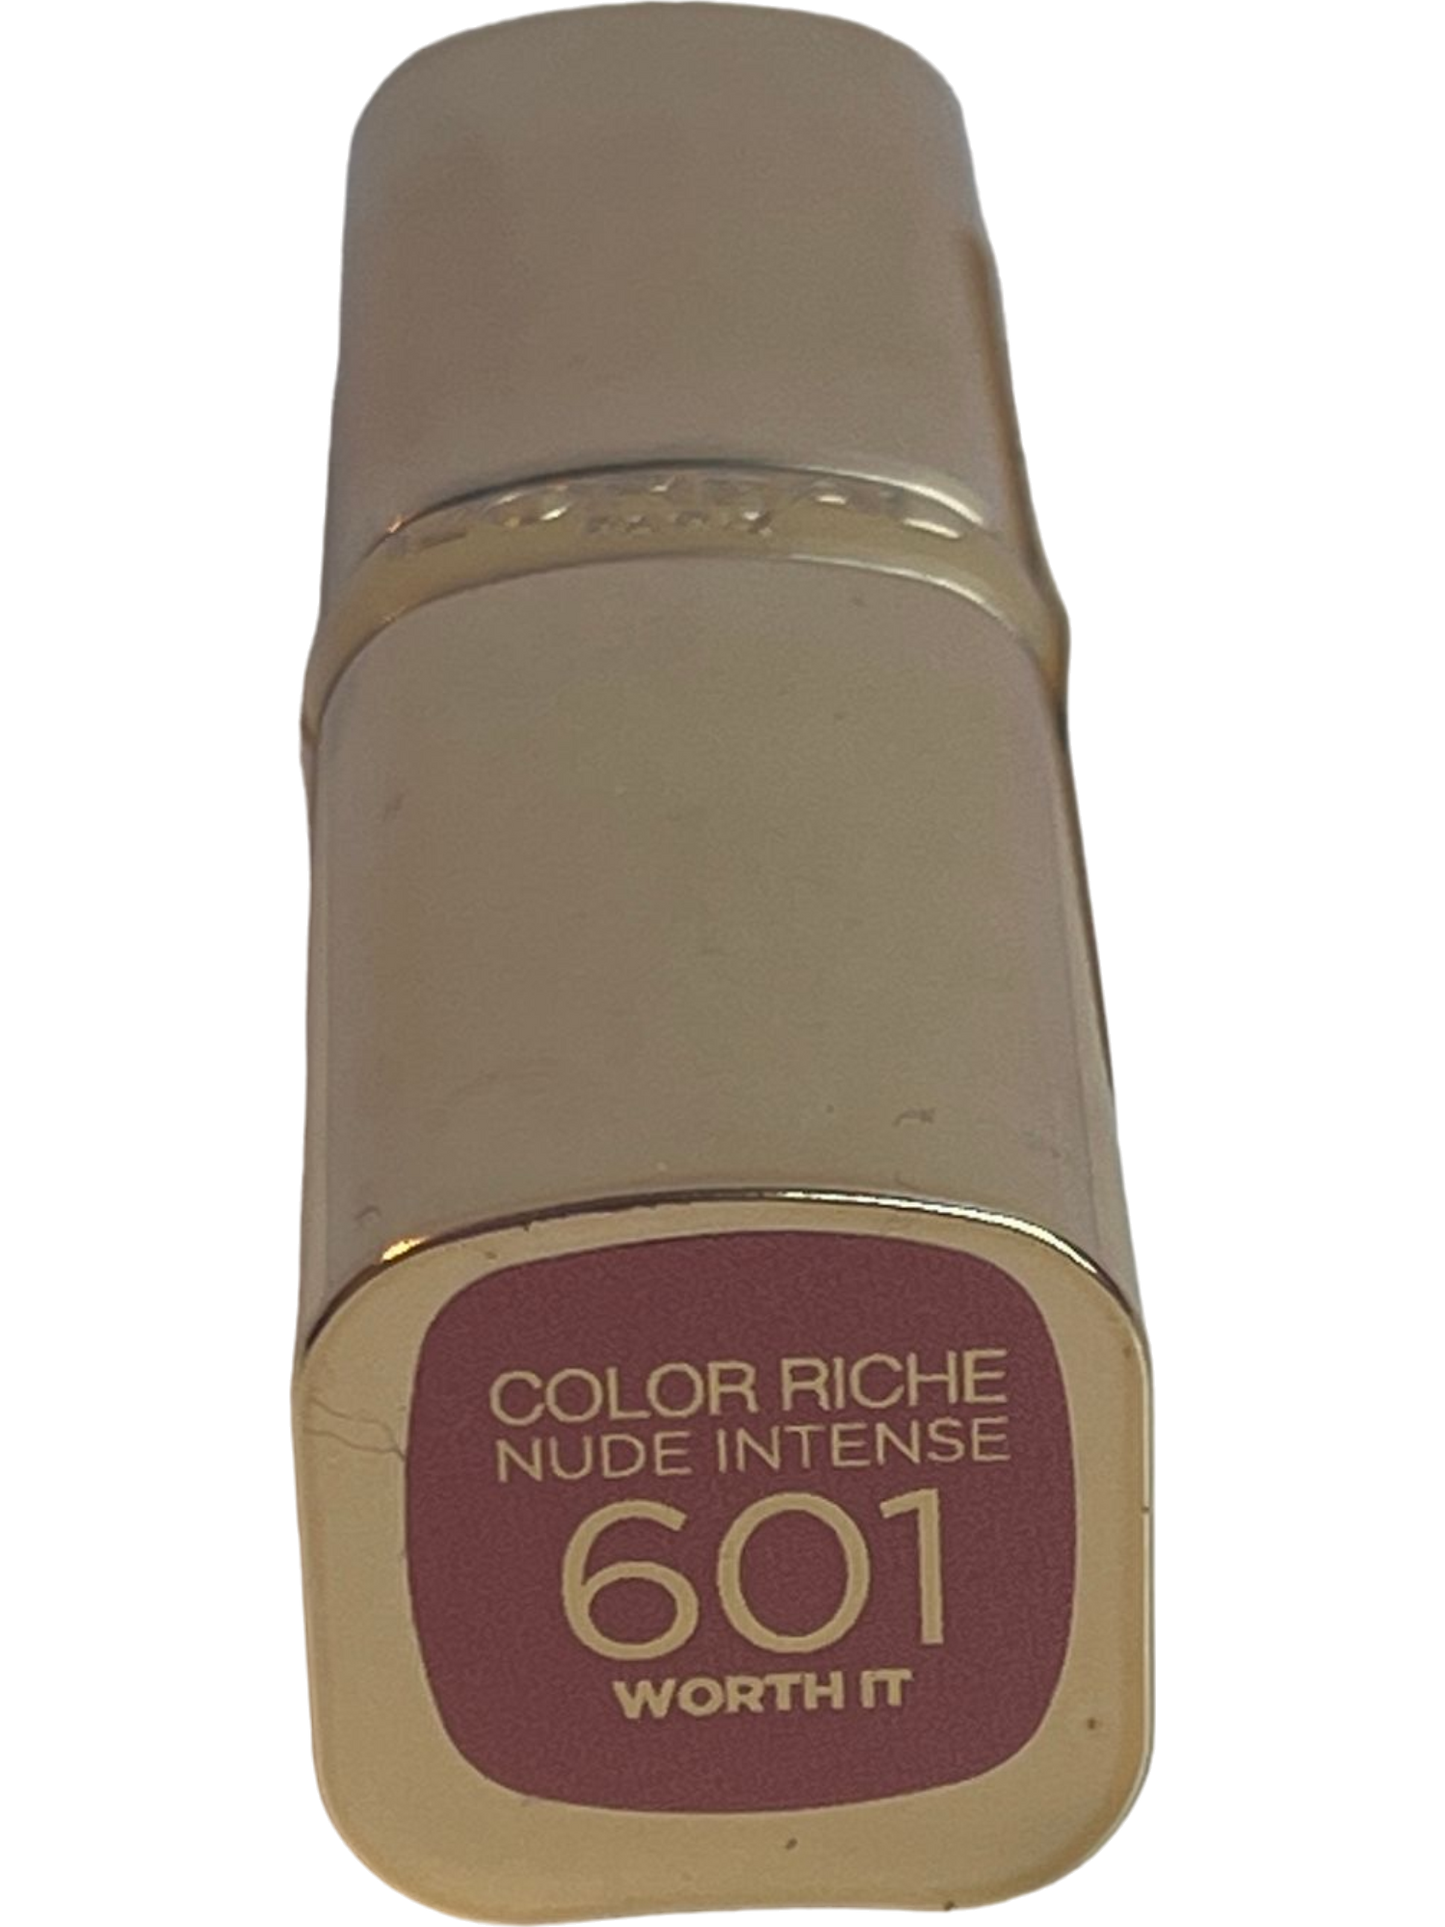 L'Oreal Paris Color Riche Nude Intense Creamy Lipstick Shade 601 WORTH IT